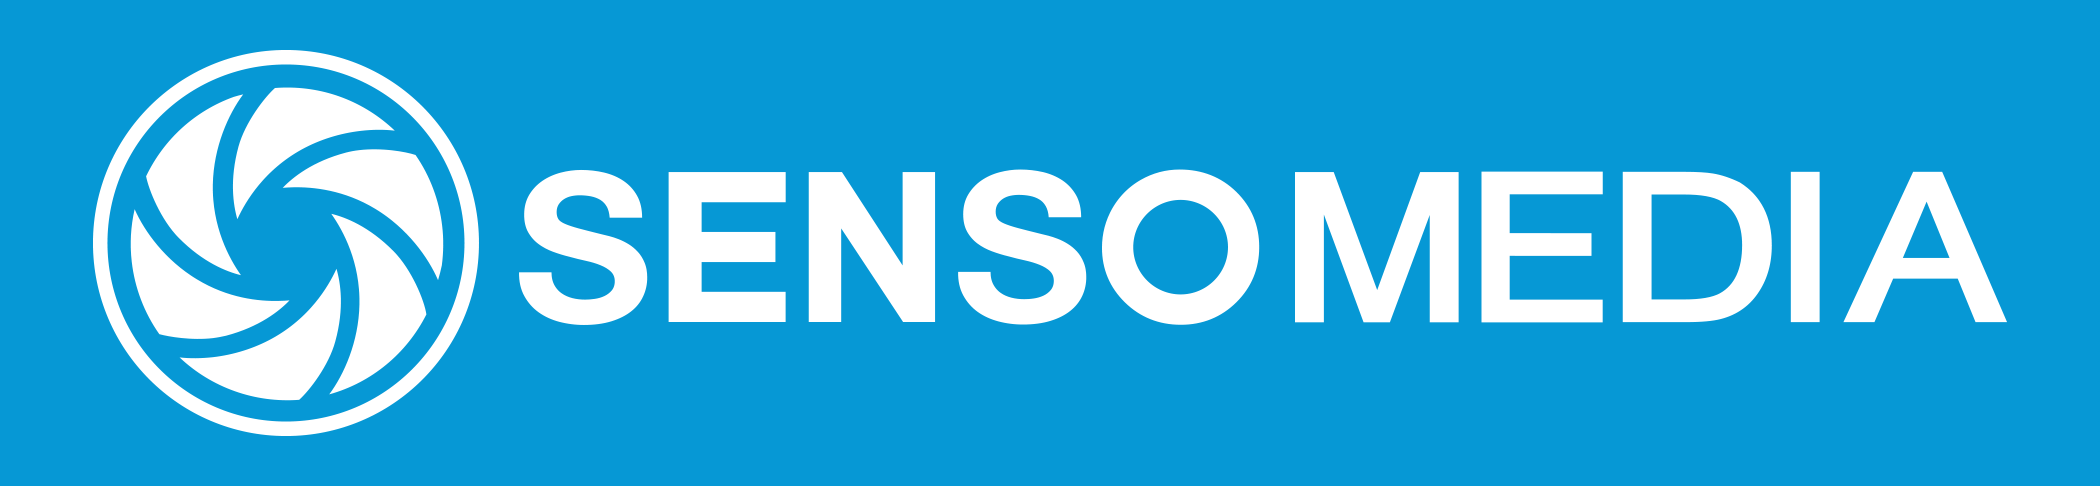 SENSO-MEDIA Fejlesztő és Szolgáltató Zártkörűen Működő Részvénytársaság